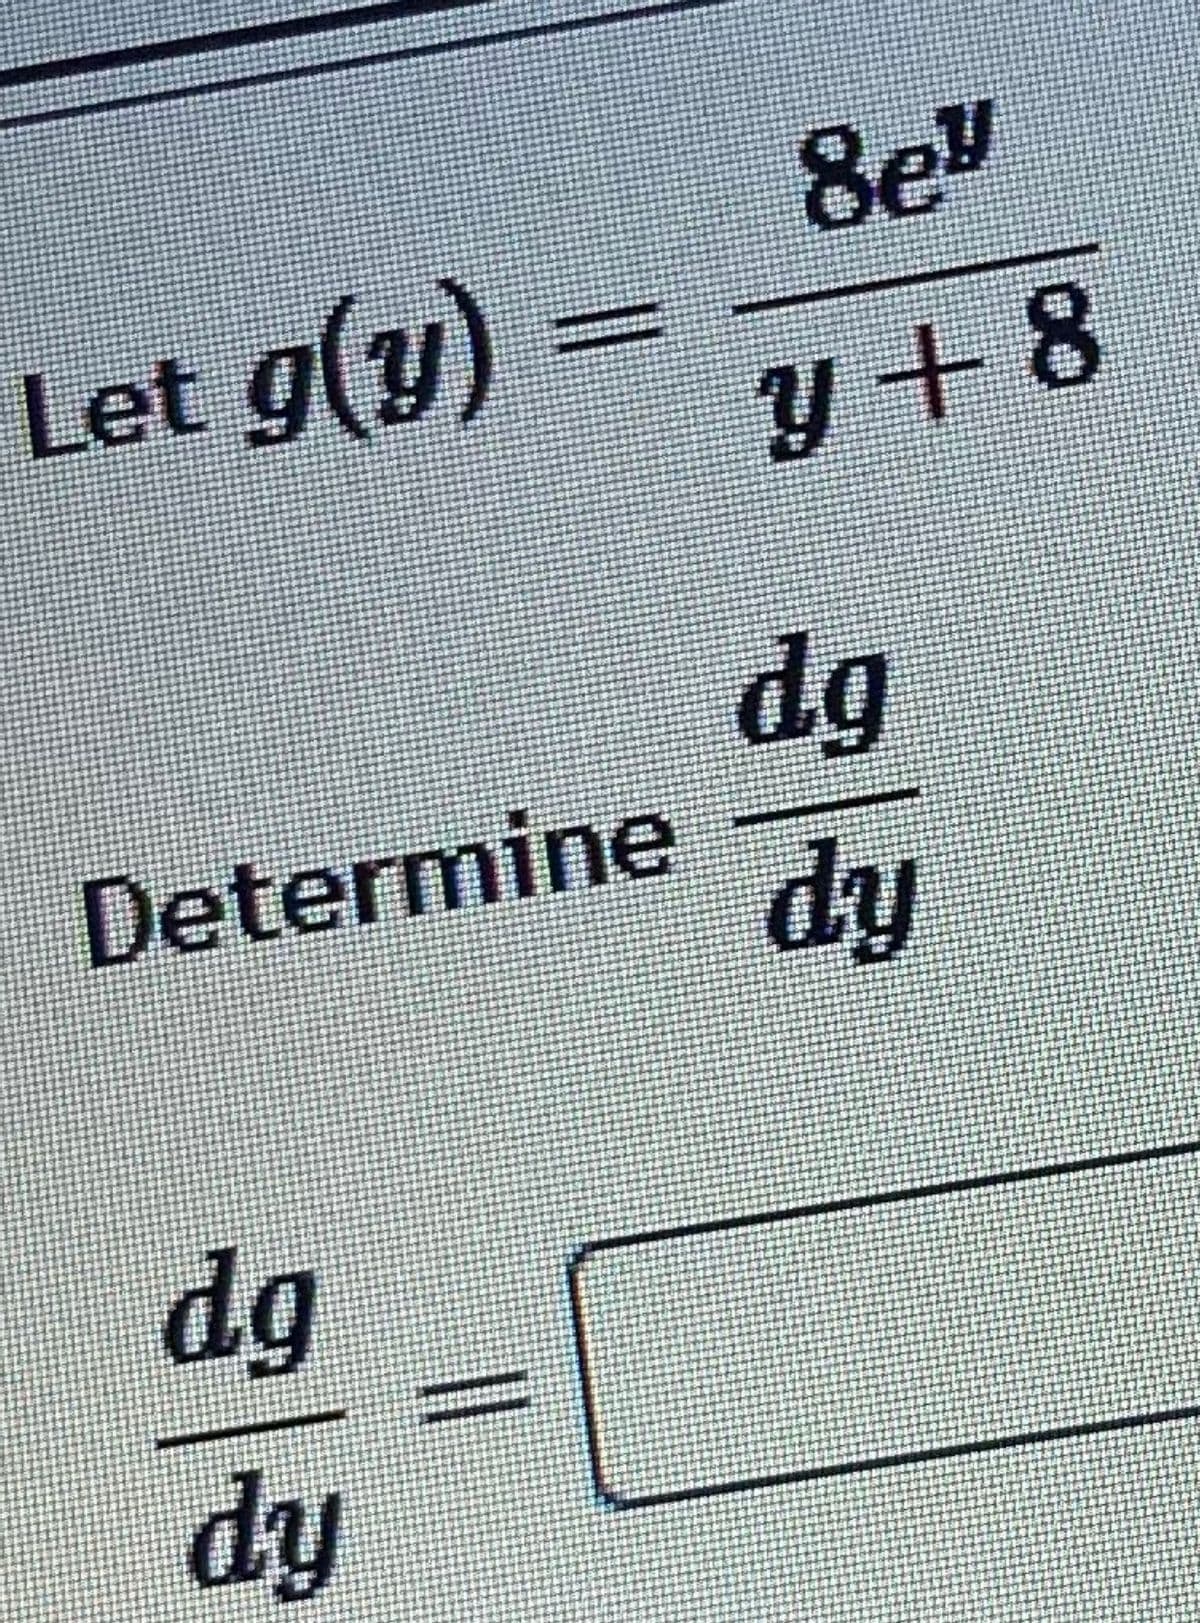 8e"
Let g(y)
+8
dg
Determine
dy
dg
dy
